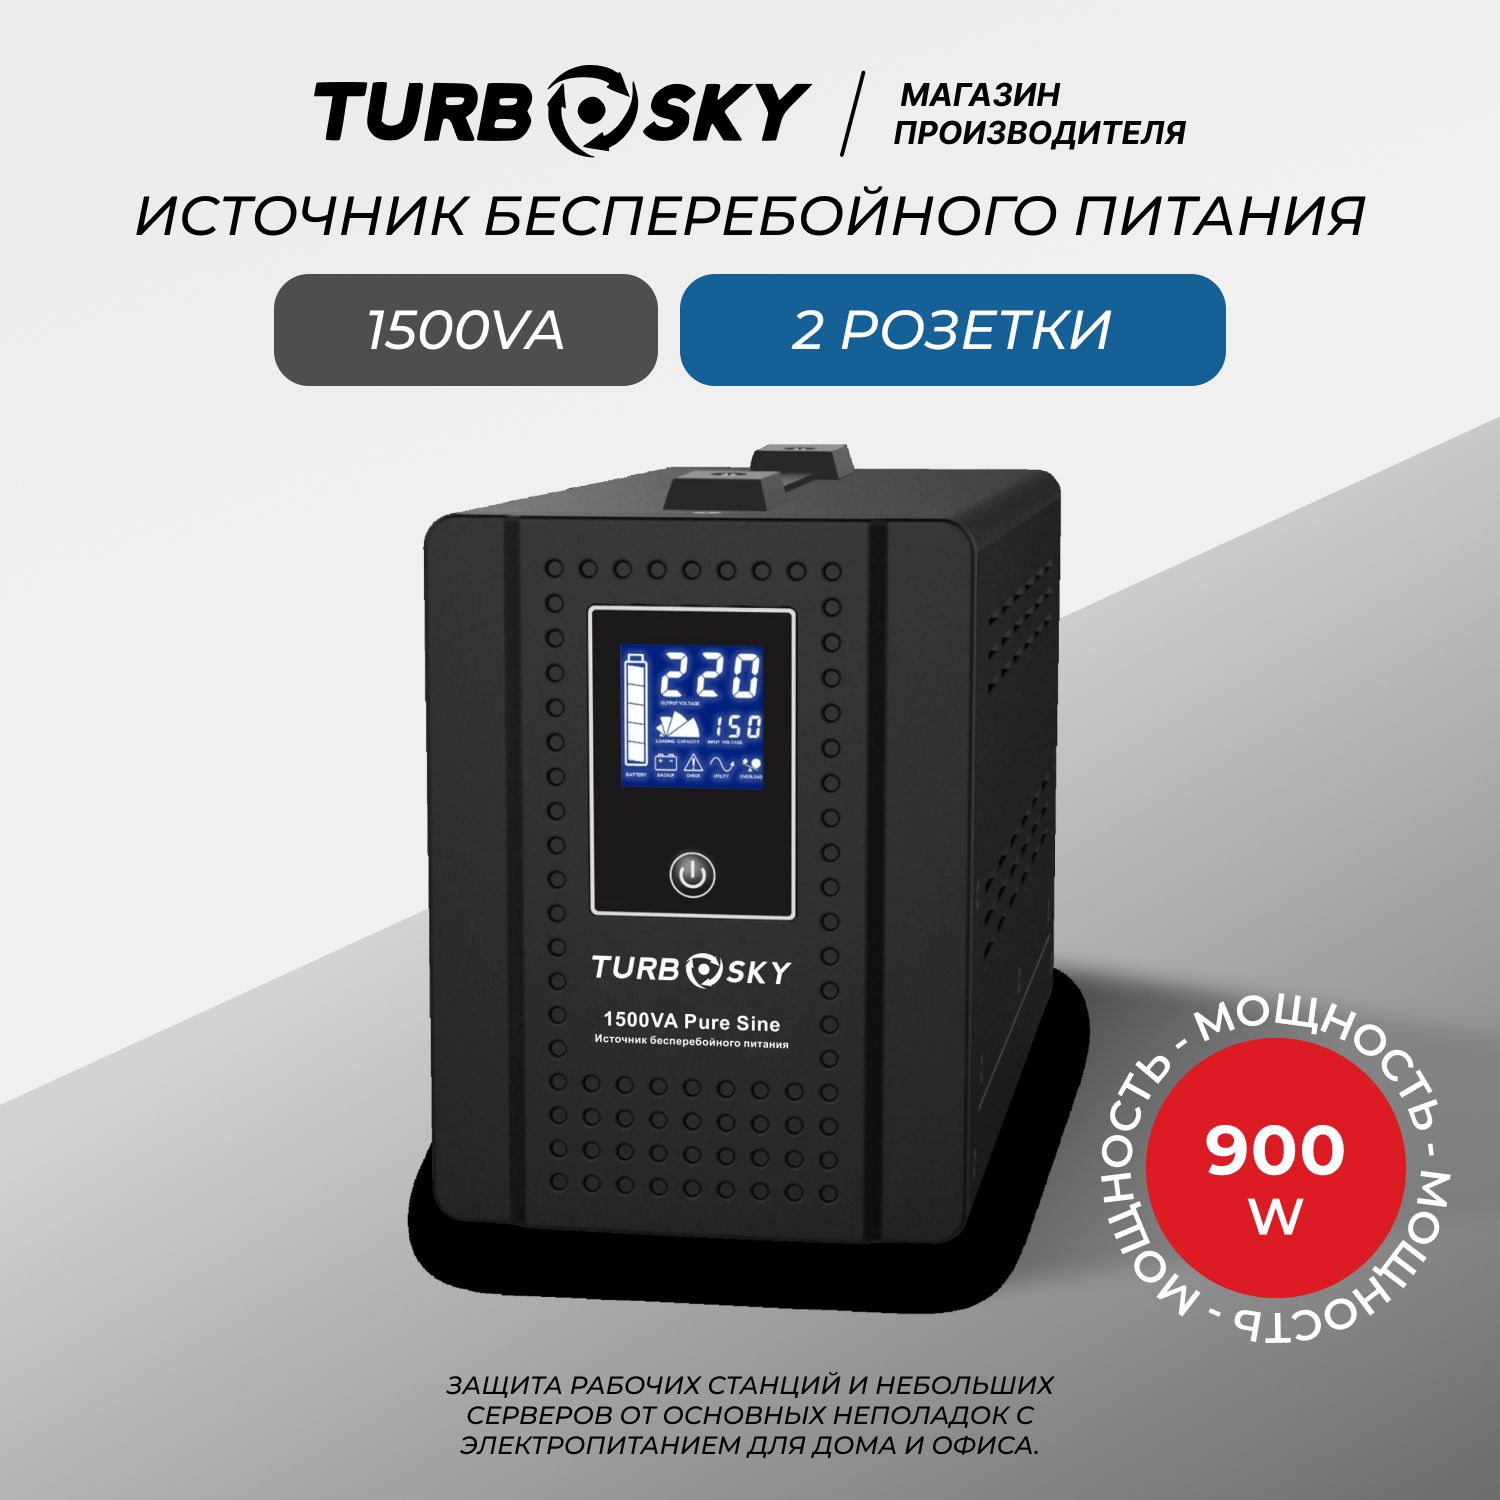 Источникбесперебойногопитания(ибпдлякотла,насоса,компьютера)Turbosky1500VAPureSine